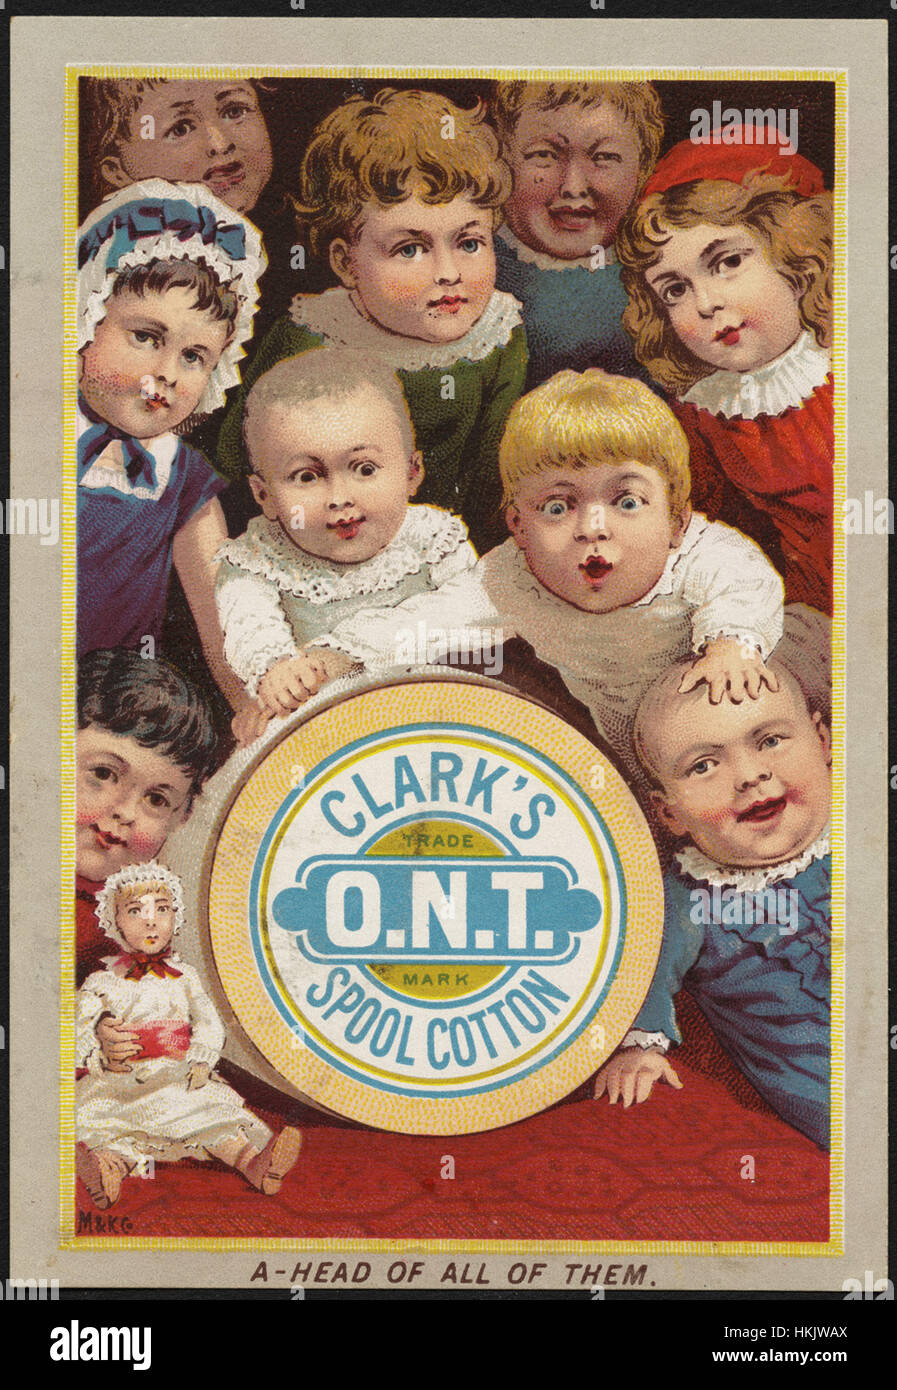 Clarks O.N.T. Spule Baumwolle, pro Kopf aller von ihnen. Stockfoto